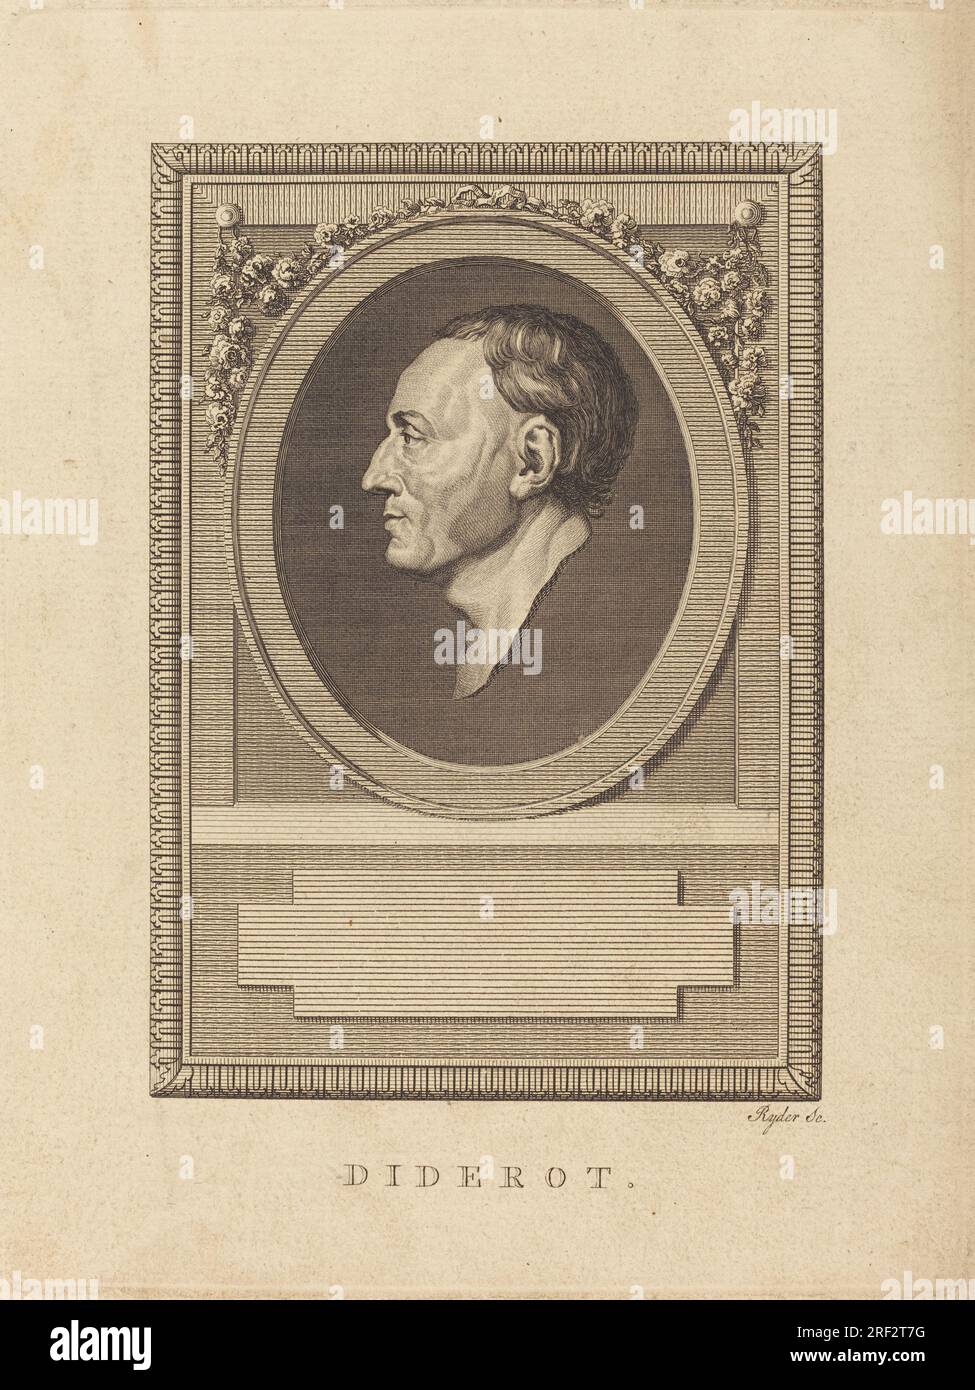 "Thomas Ryder, Diderot, incisione su carta stesa, lastra: 21,9 x 16,4 cm (8 5/8 x 6 7/16 pollici) Foglio: 24,9 x 19,7 cm (9 13/16 x 3/4 pollici), regalo di John o'Brien, 1990,56,9' Foto Stock